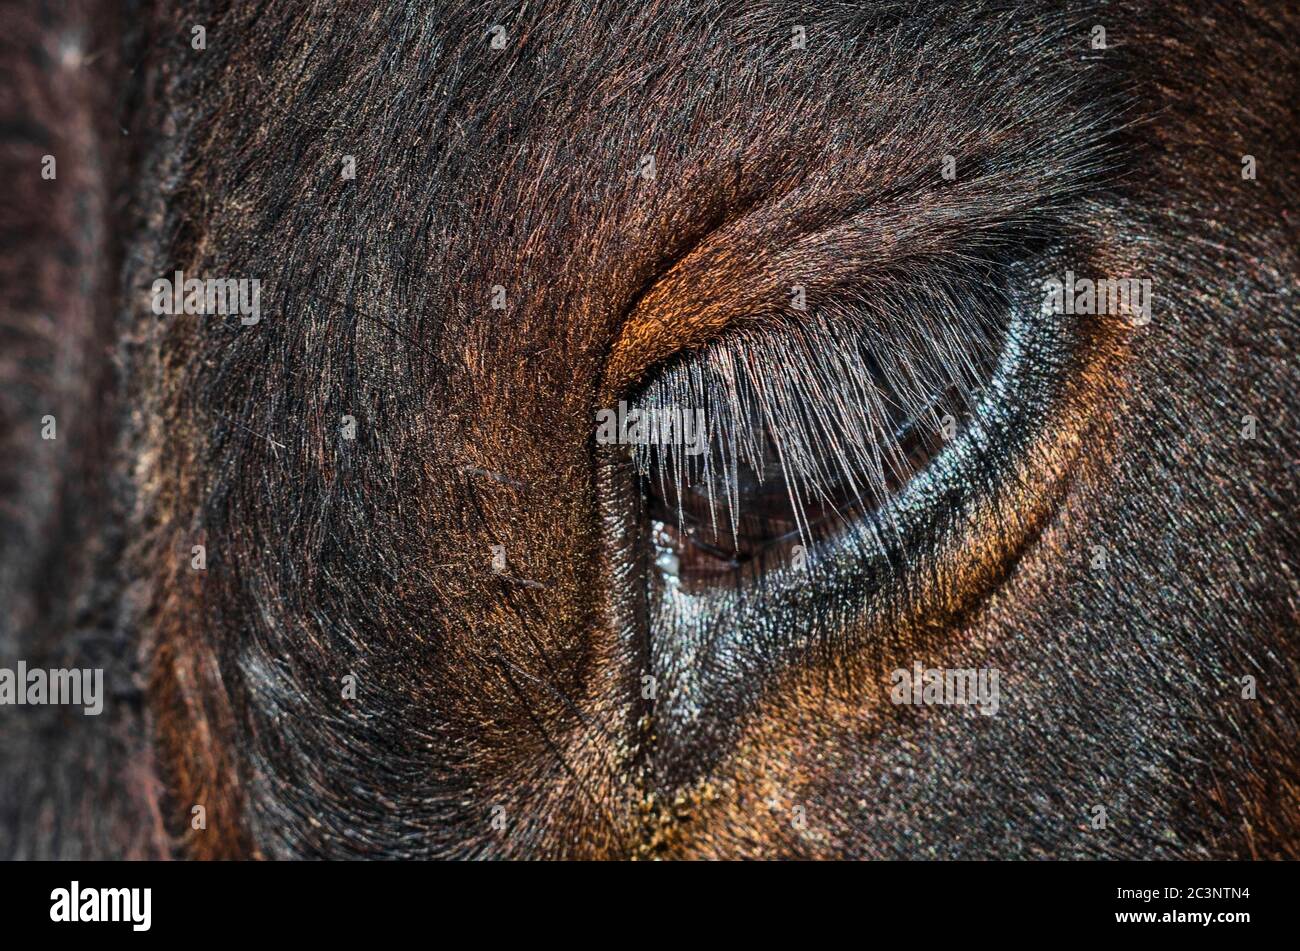 Cow eye, long eyelashes, close-up. Stock Photo